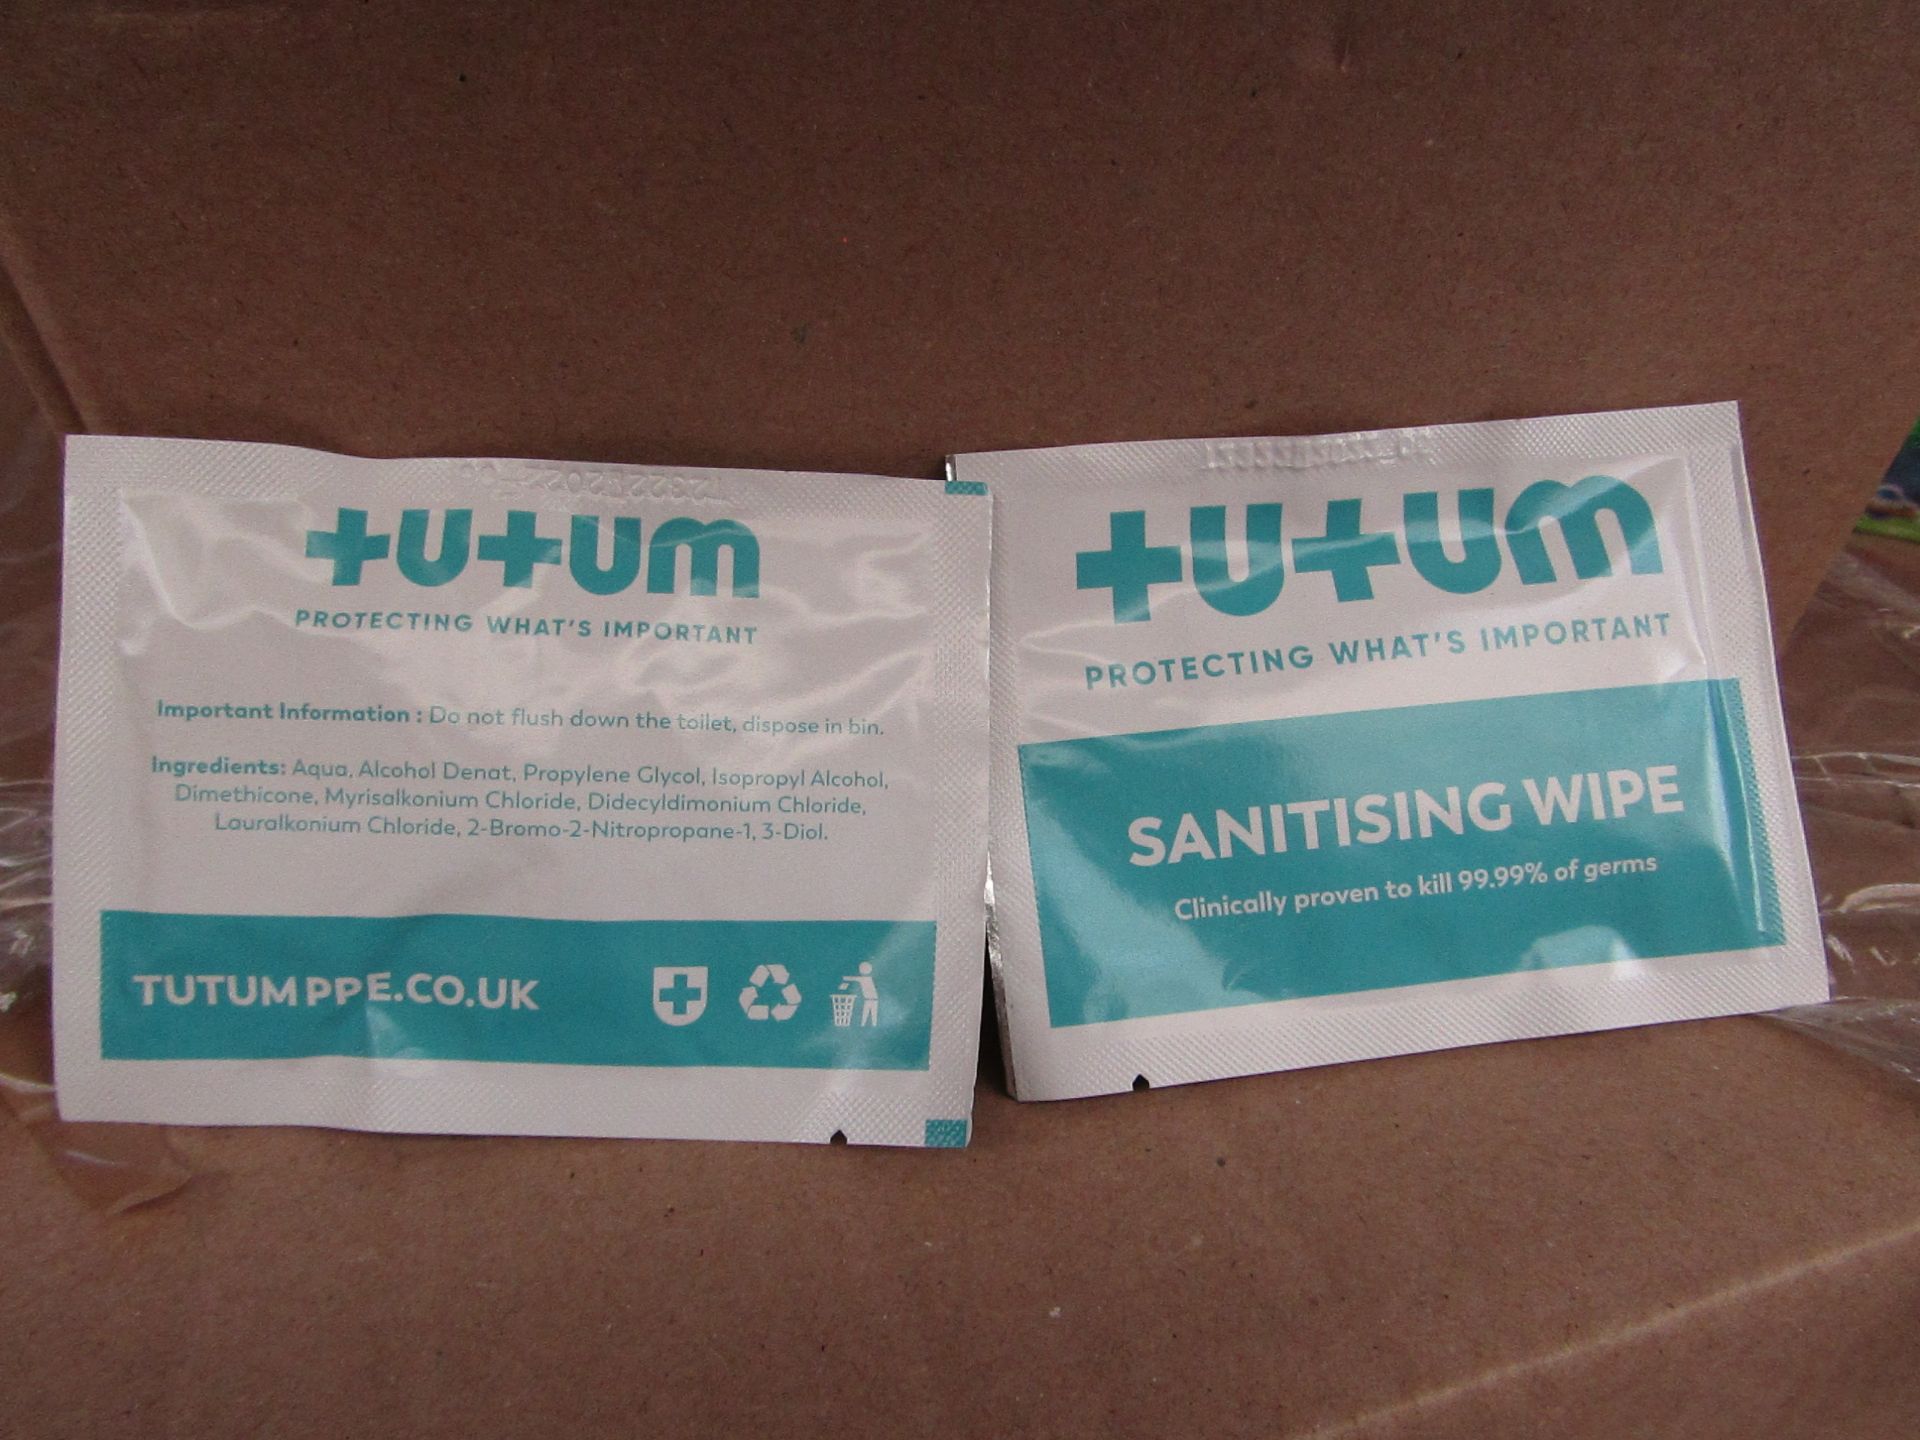 500 x Sachets Tutumpee +U+UM Single Use - Sanitising Wipes - New & Boxed.